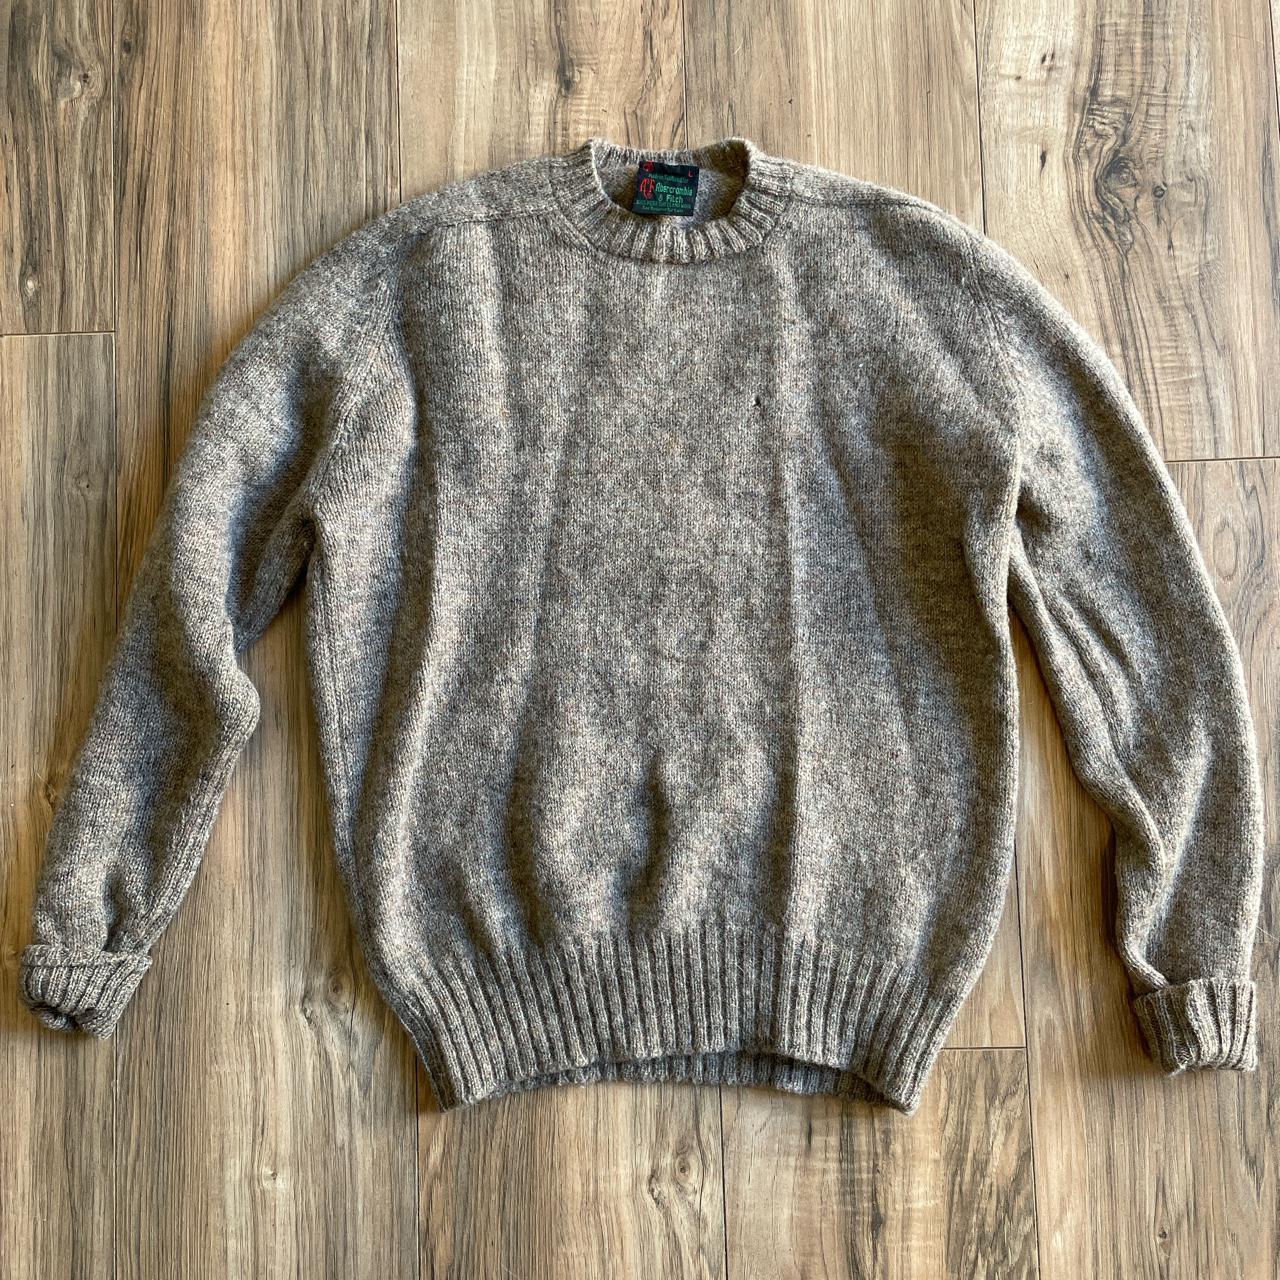 Vintage Abercrombie & Fitch 100% Shetland Wool... - Depop